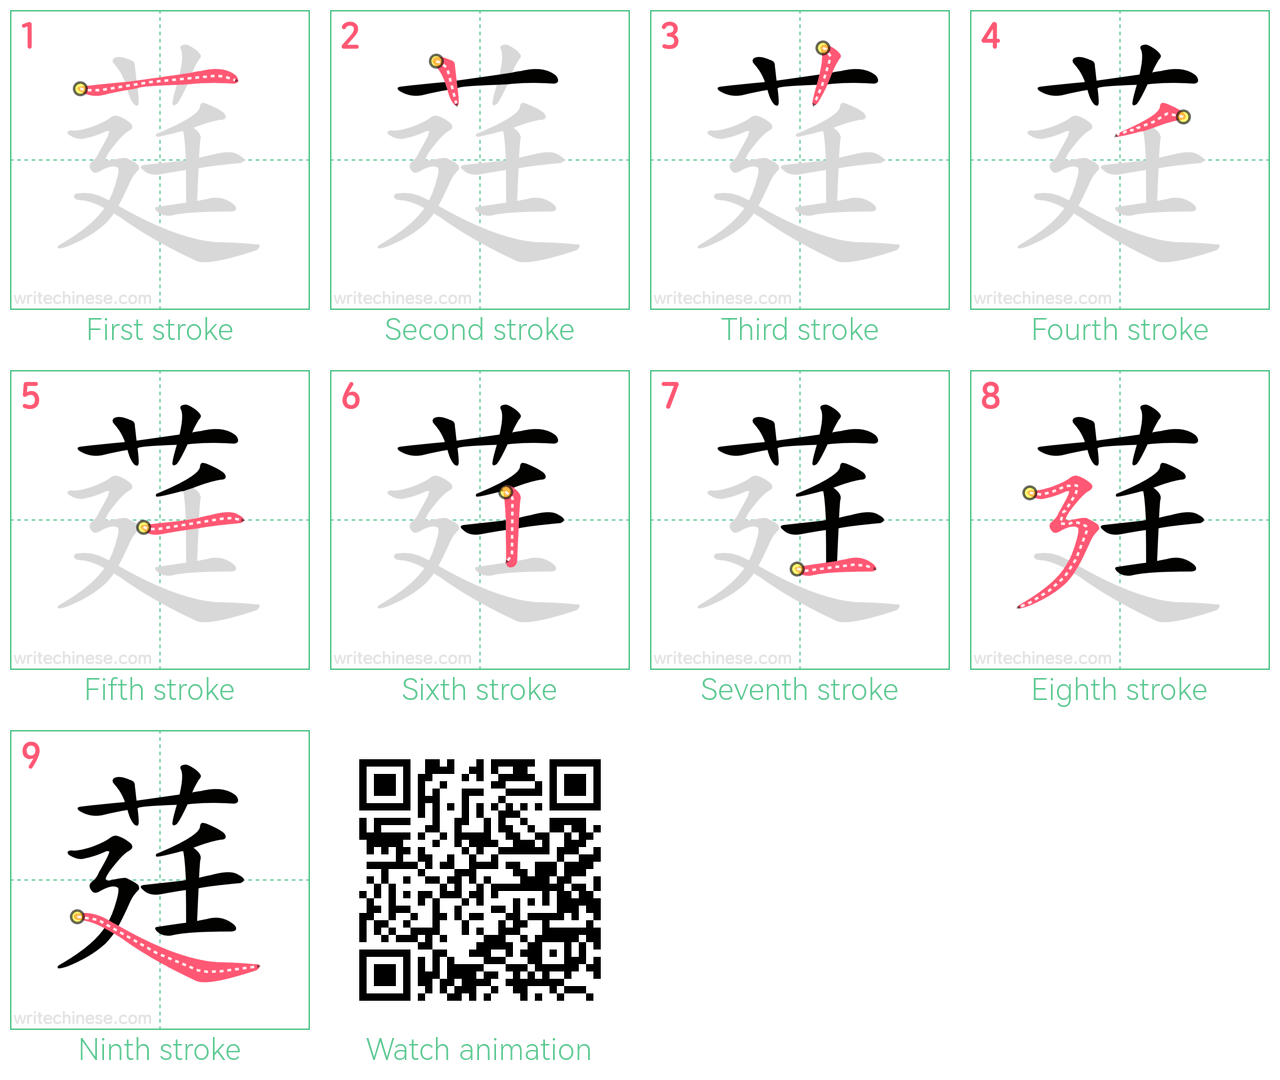 莛 step-by-step stroke order diagrams